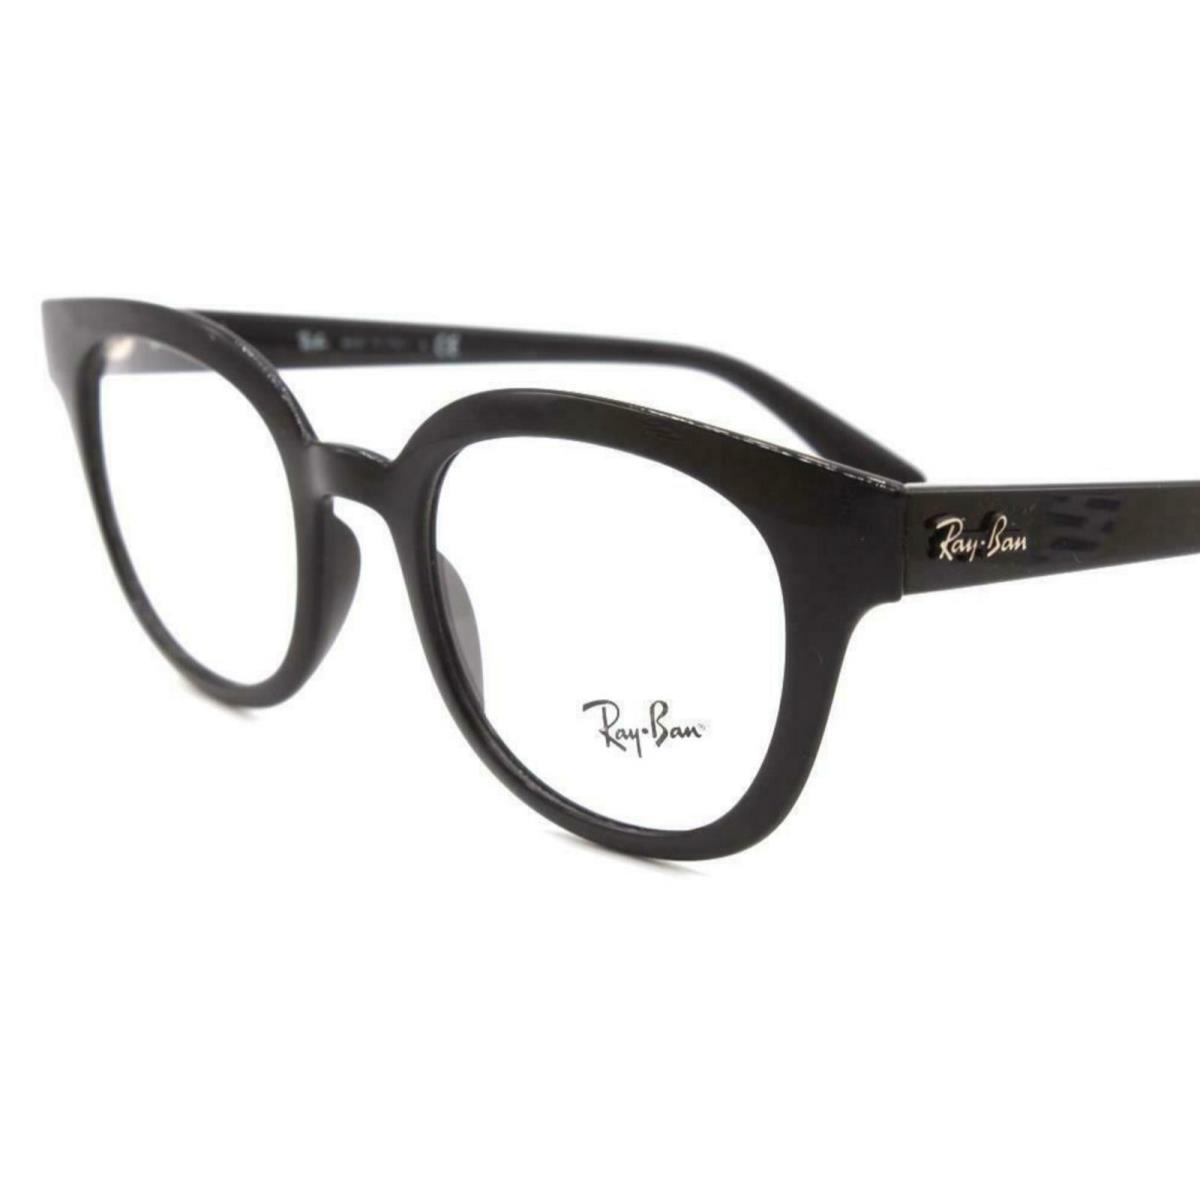 Ray-ban Eyeglasses RB 4324-V 2000 50-21 150 Classic Round Shiny Black Frames